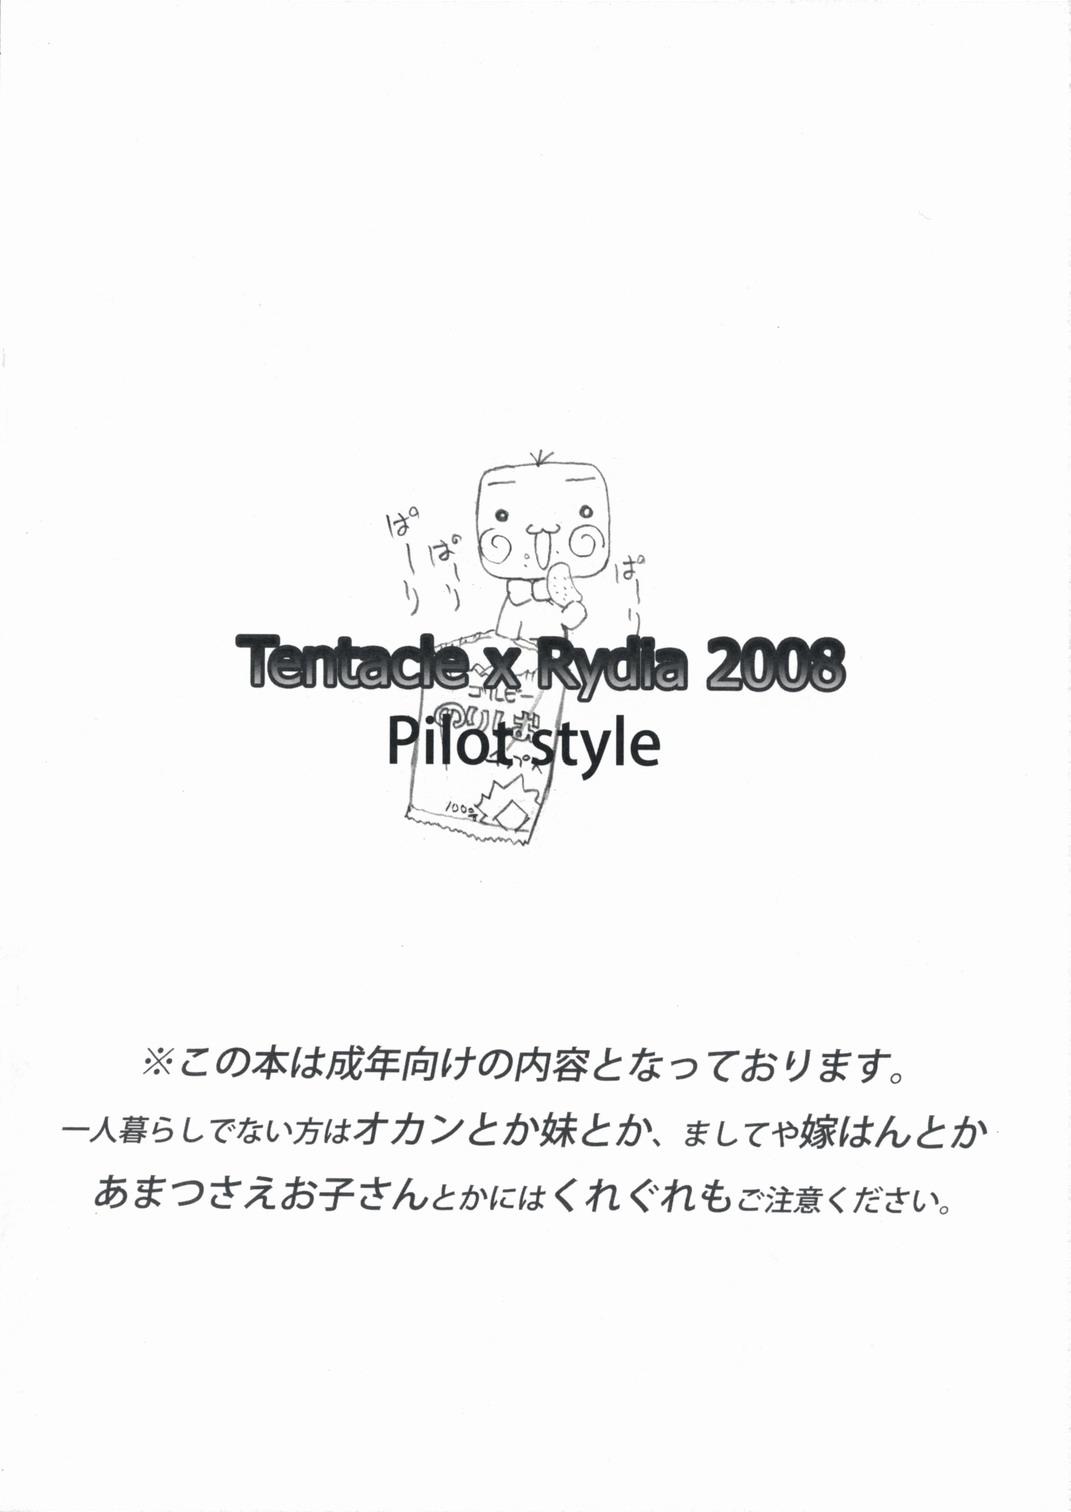 Bondagesex Shokushu x Rydia 2008 Otameshiban - Tentacle x Rydia 2008 Pilot Style - Final fantasy iv Roleplay - Page 16